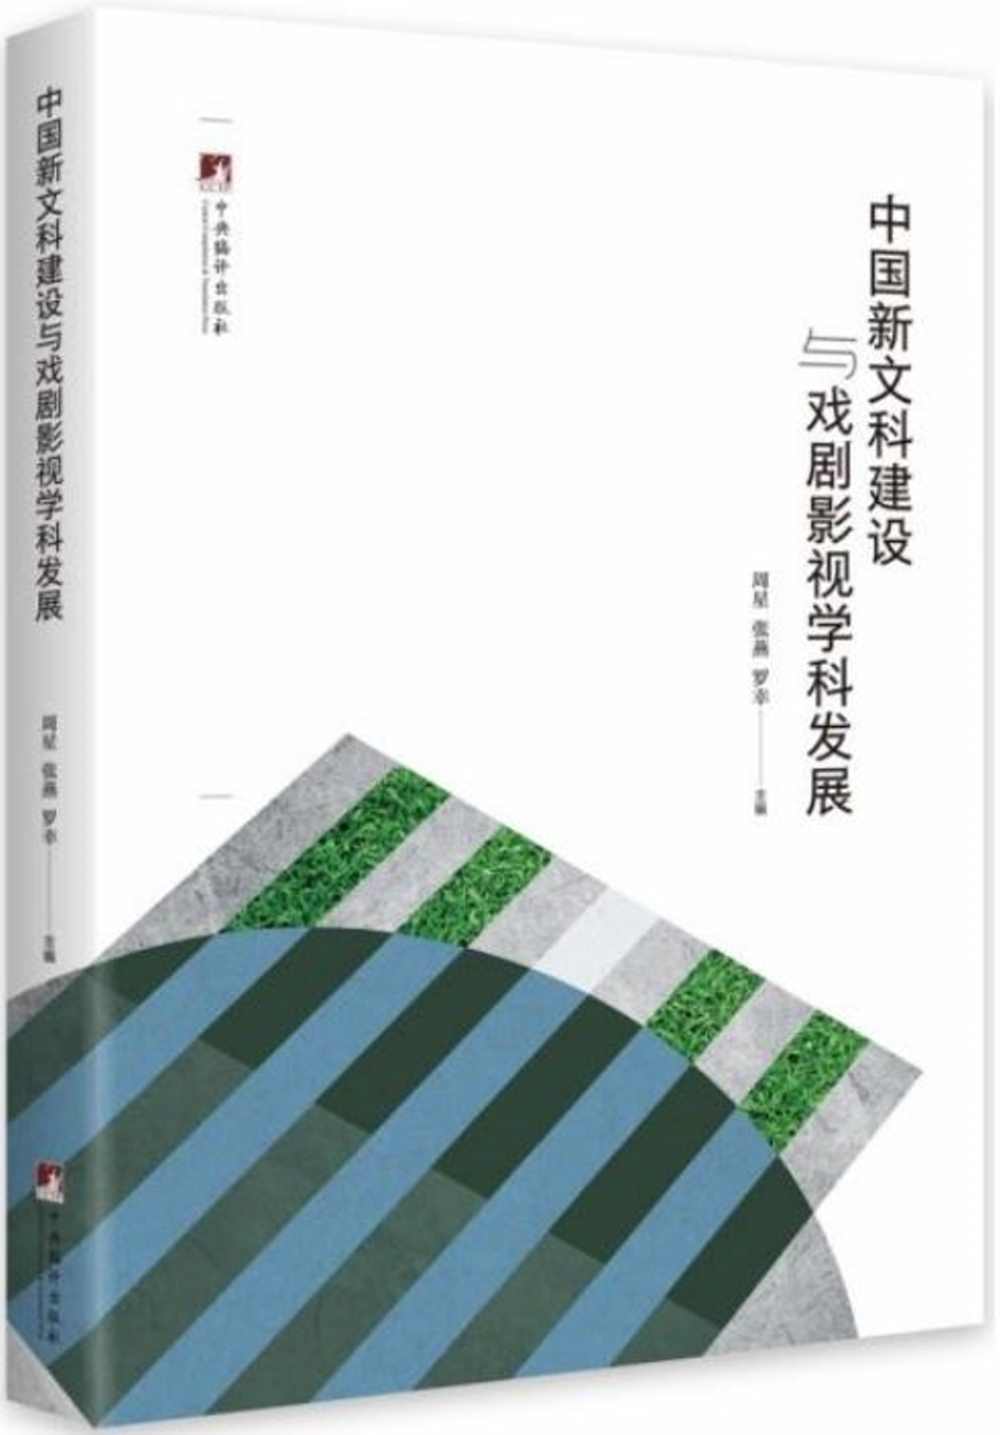 中國新文科建設與戲劇影視學科發展